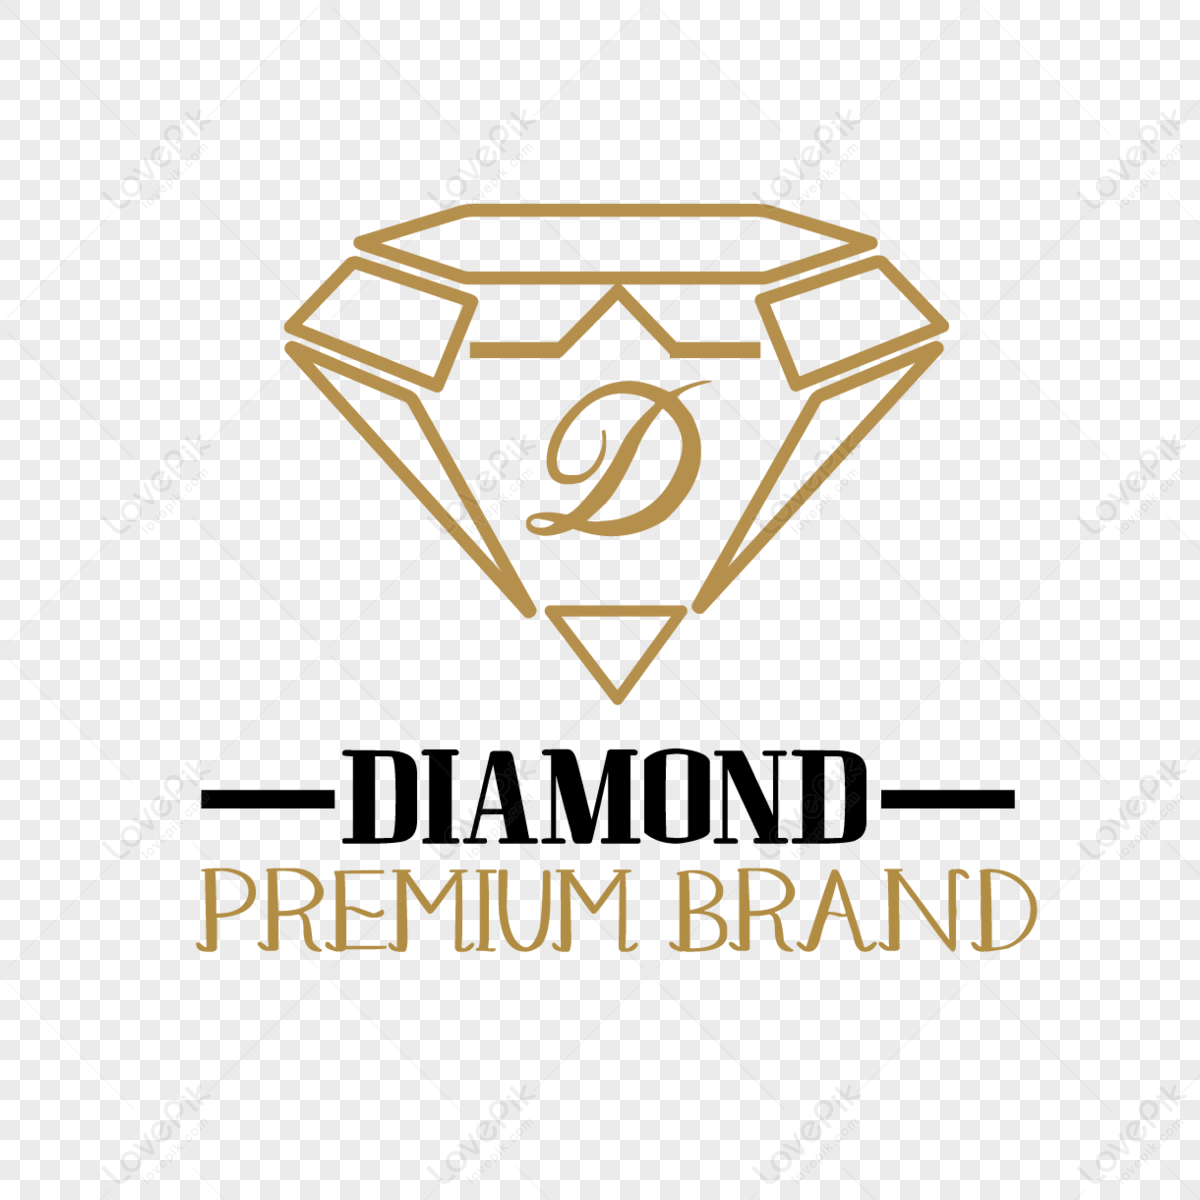 Free Gold Diamond Logo / Insignia Vector #1 - TitanUI